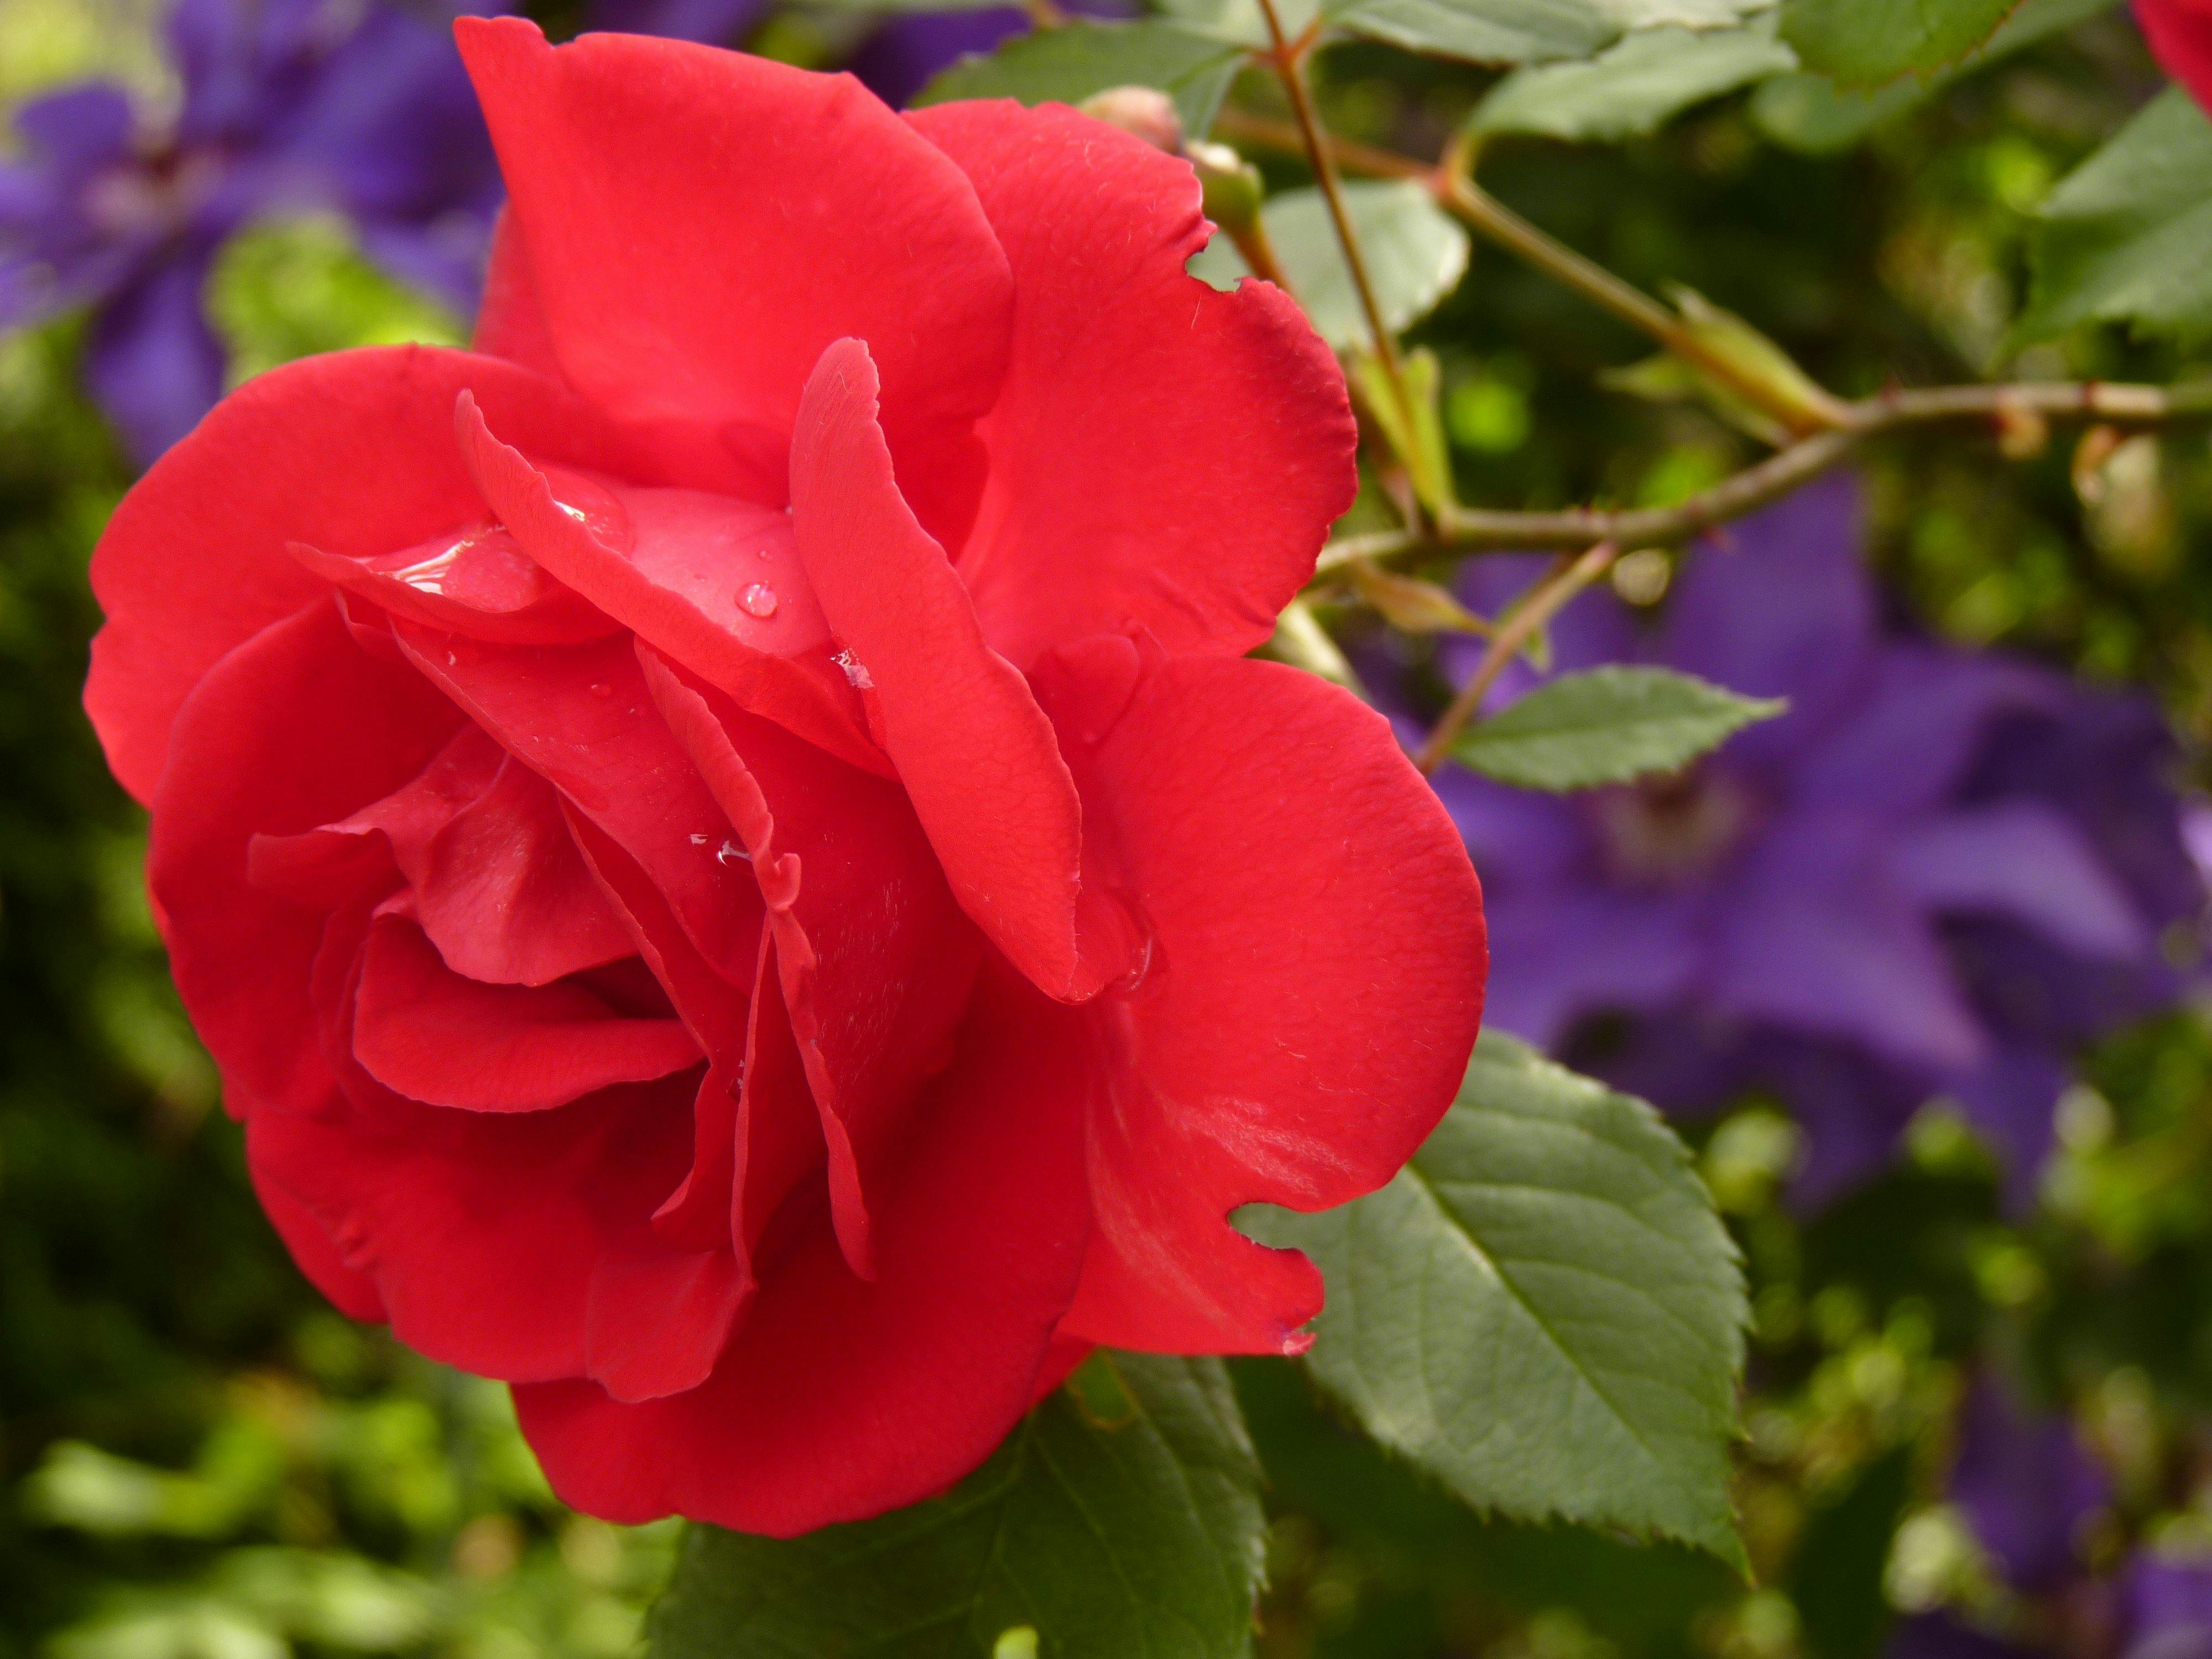 rose-blossom-bloom-red-rose-87469.jpeg (4000×3000)